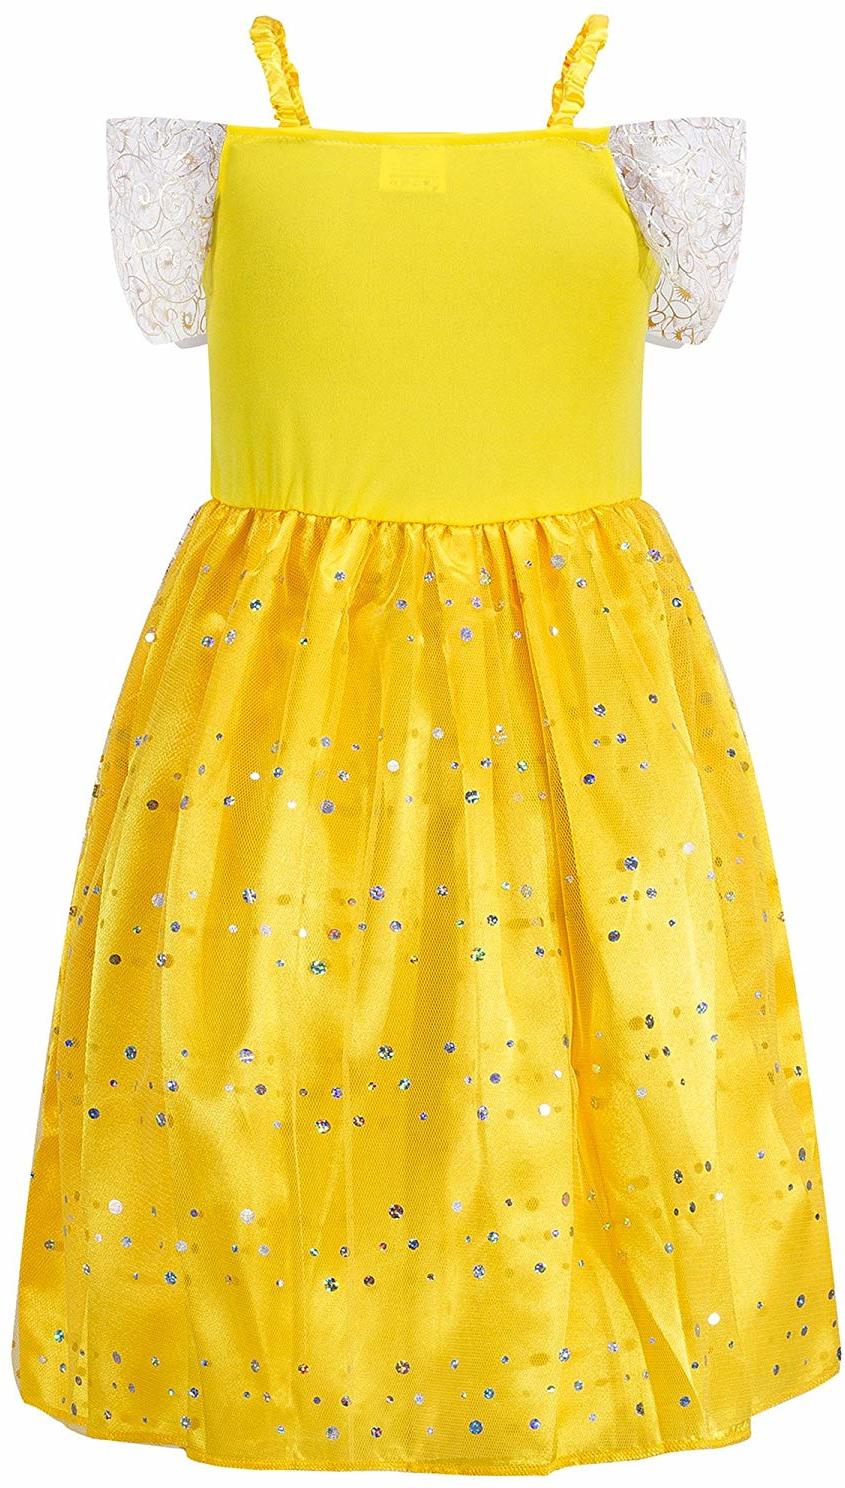 Katara 1749 - Prinzessinen-Kleid Belle / Belle aus Disney's für Karneval, Halloween, Prinzessin-Kindergeburtstag, Gelb